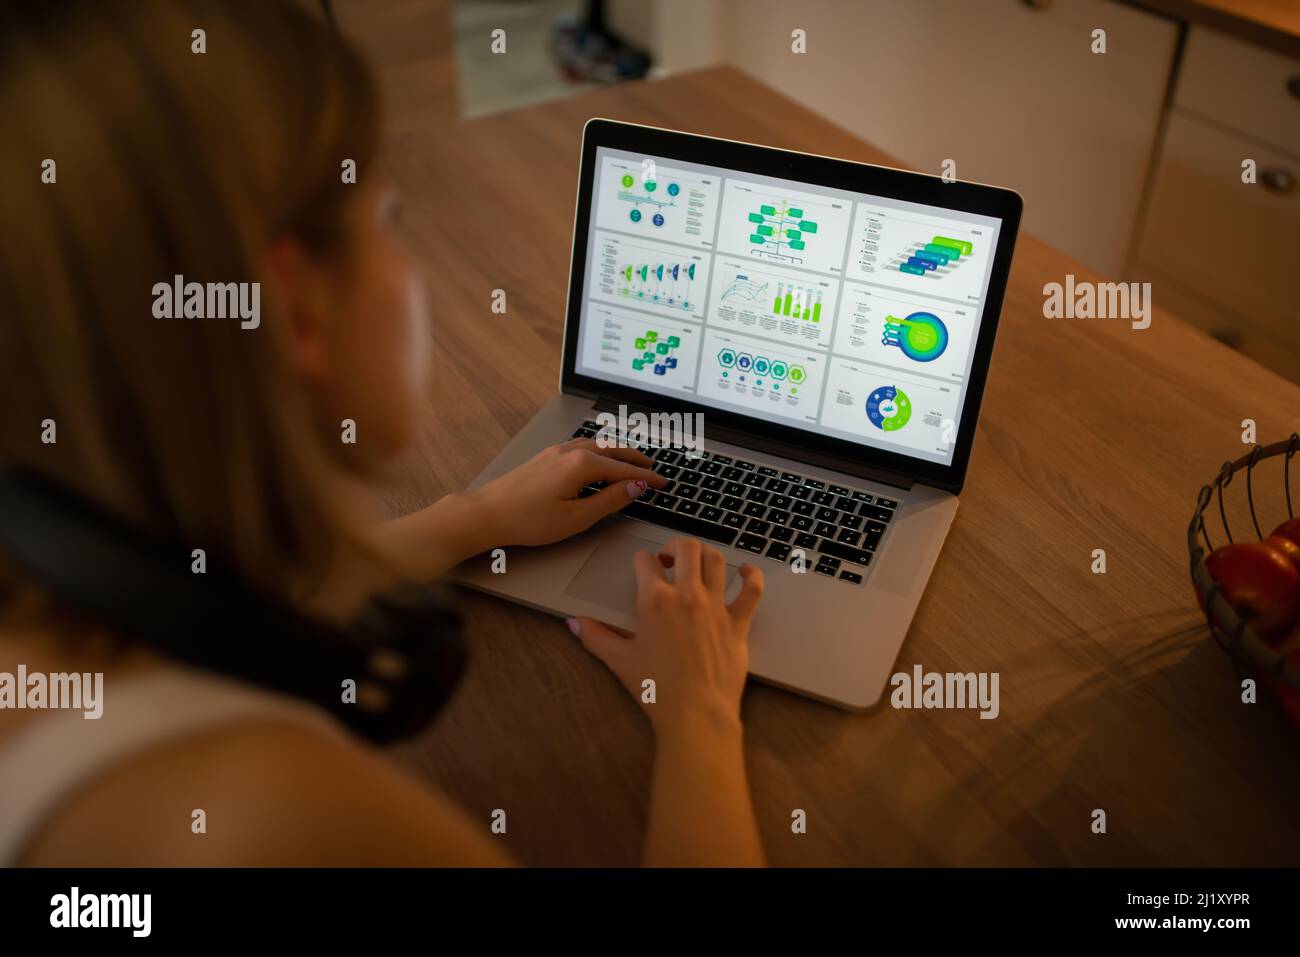 Eine junge, fleißige Frau arbeitet von zu Hause aus an neuen Projekten und ermittelt auf ihrem neuen Laptop Statistiken Stockfoto